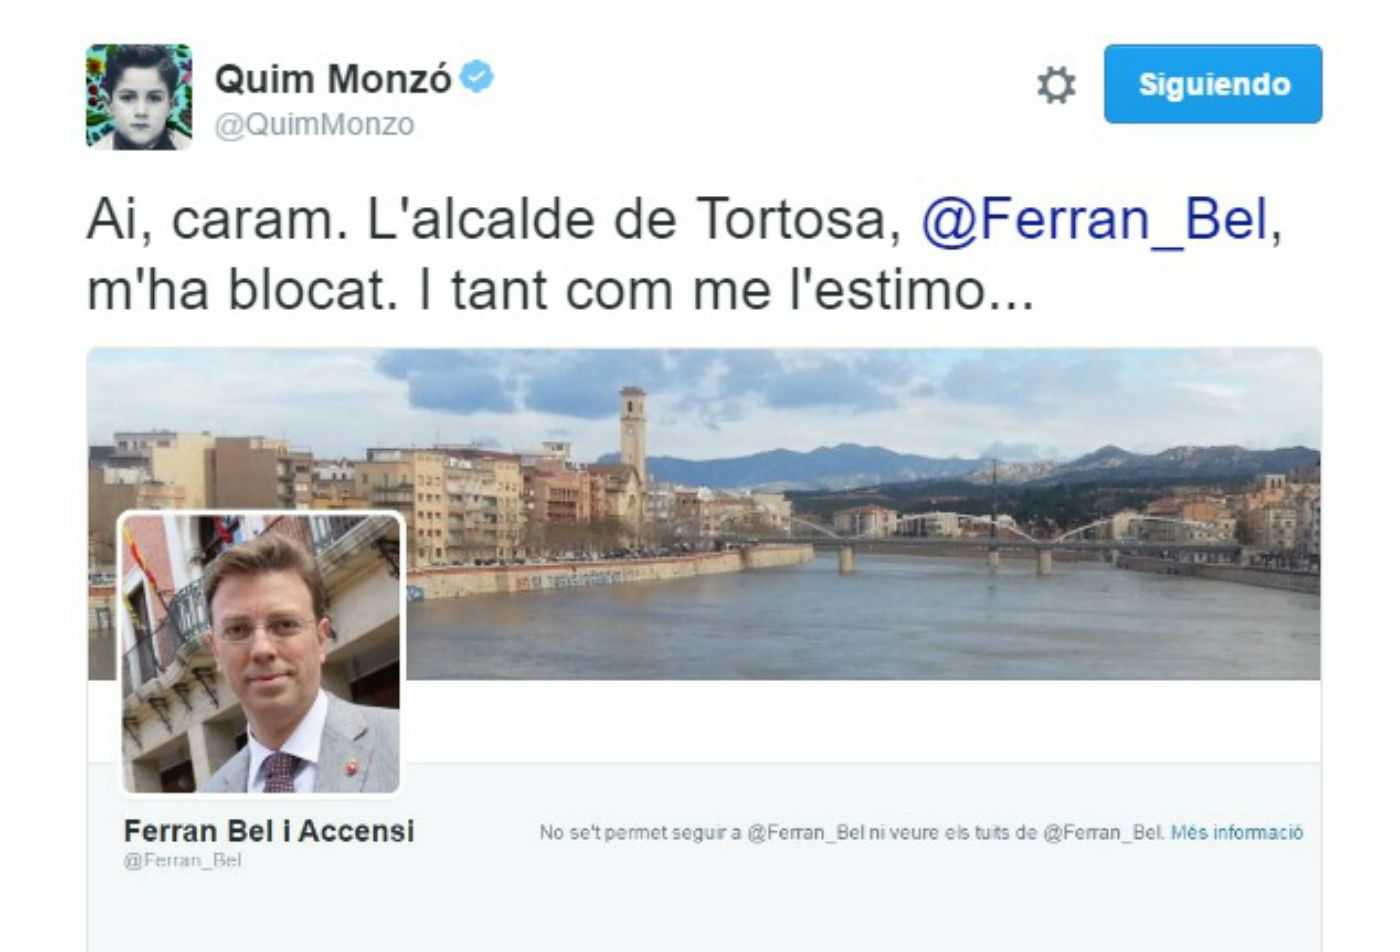 L'alcalde de Tortosa bloqueja Quim Monzó al Twitter